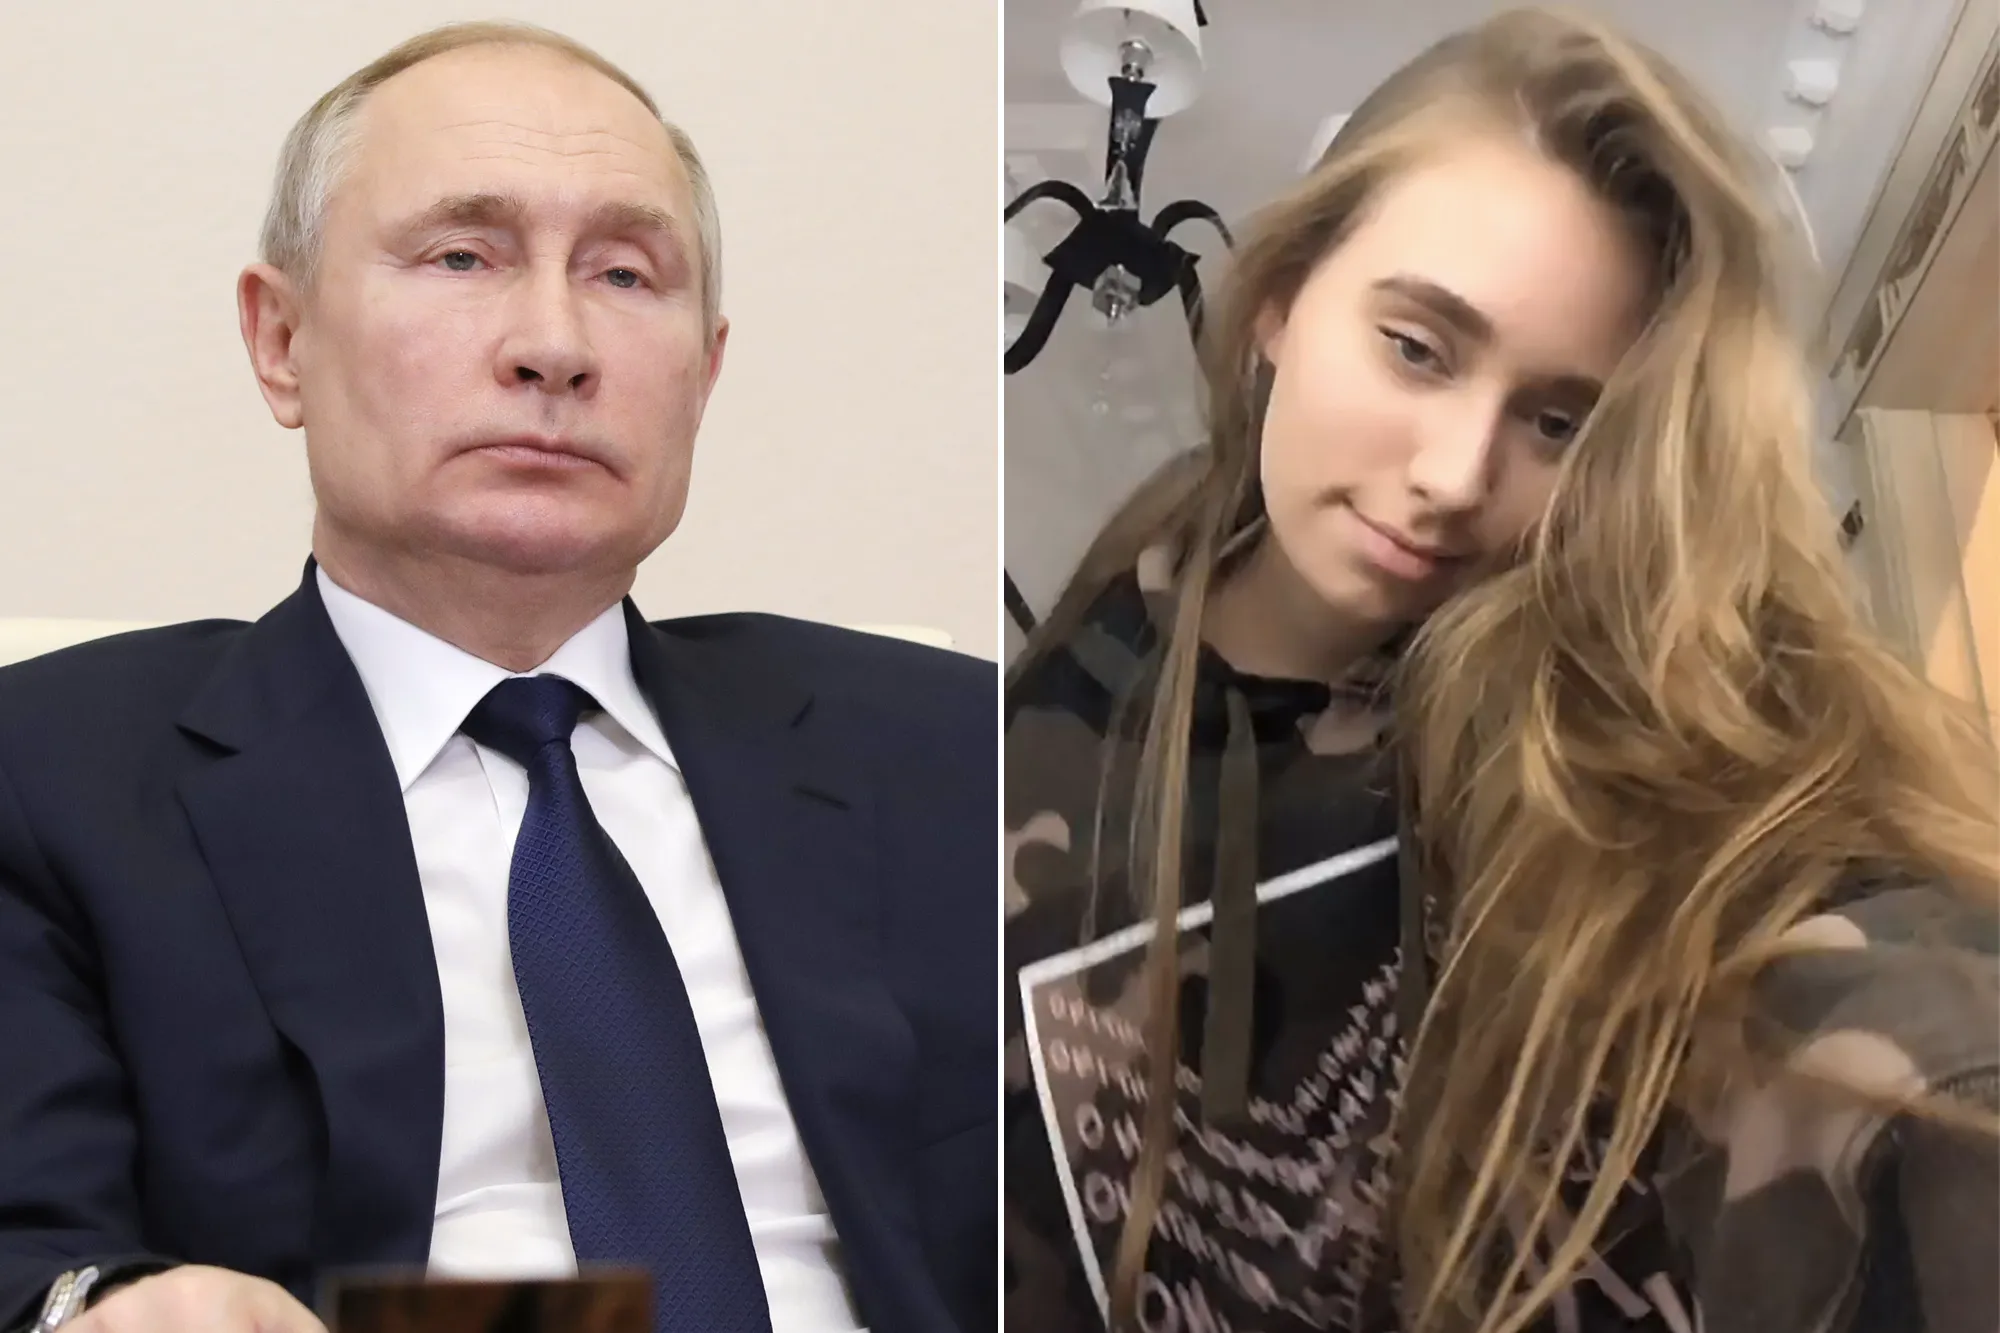 إليزافيتا فلاديميروفنا ابنة بوتين من علاقة غير شرعية مع عشيقته سفيتلانا كريفونوجيخ